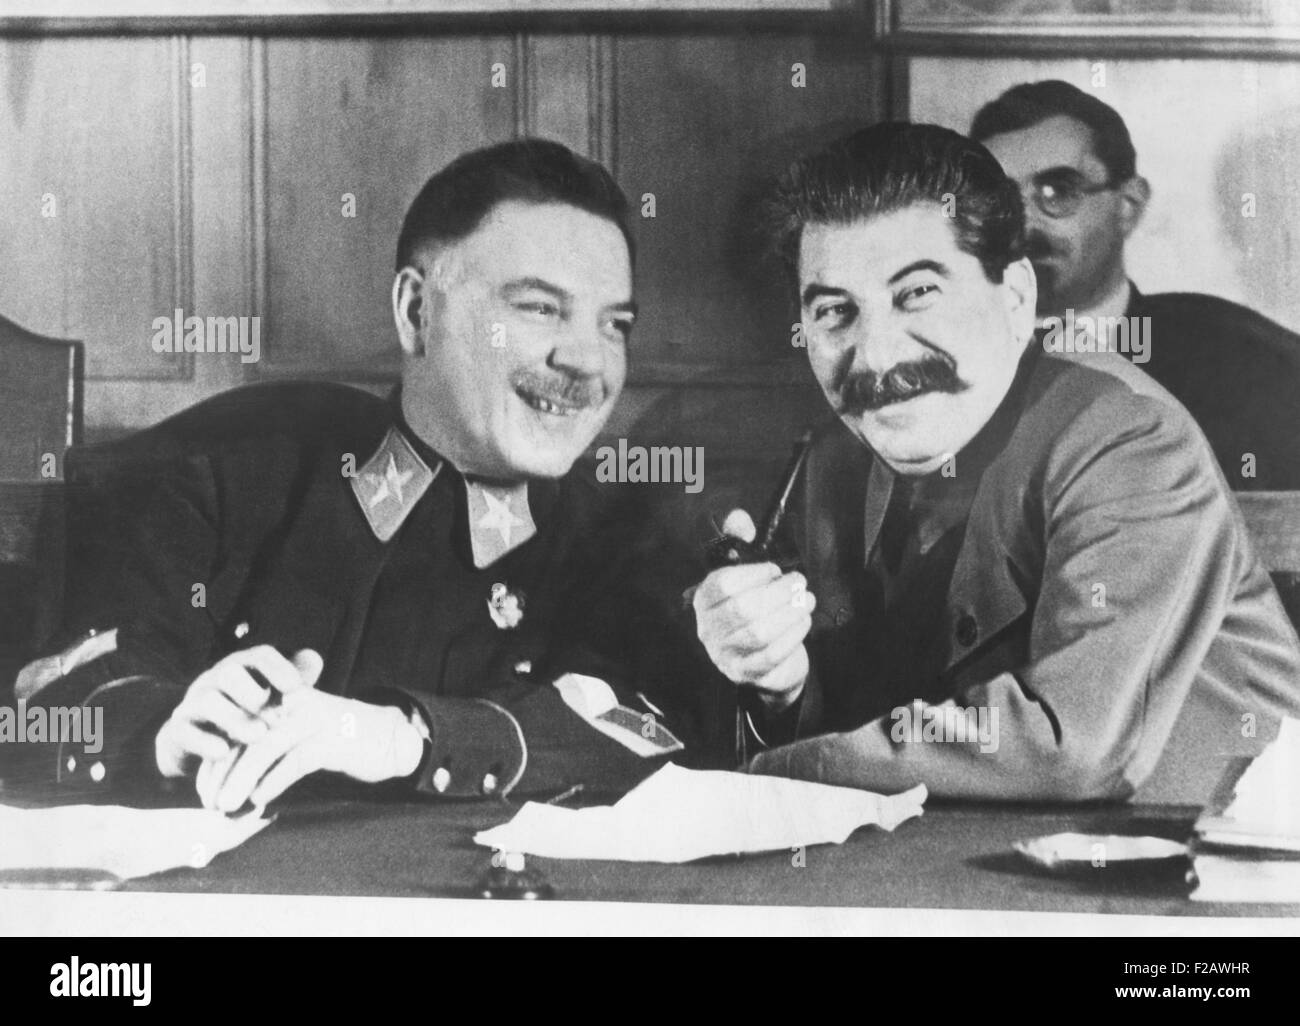 Josef Stalin (links) und Kliment Voroshilov, des sowjetischen Krieg Hauptminister, 1936. Woroschilow Beziehungen mit Stalin waren belastet durch die Irrungen und Hinrichtungen vieler Russlands militärische Befehlshaber des großen Terrors der 1930er. Woroschilow überlebt, befahl der Leningrader Front im zweiten Weltkrieg. (CSU 2015 11 1366) Stockfoto